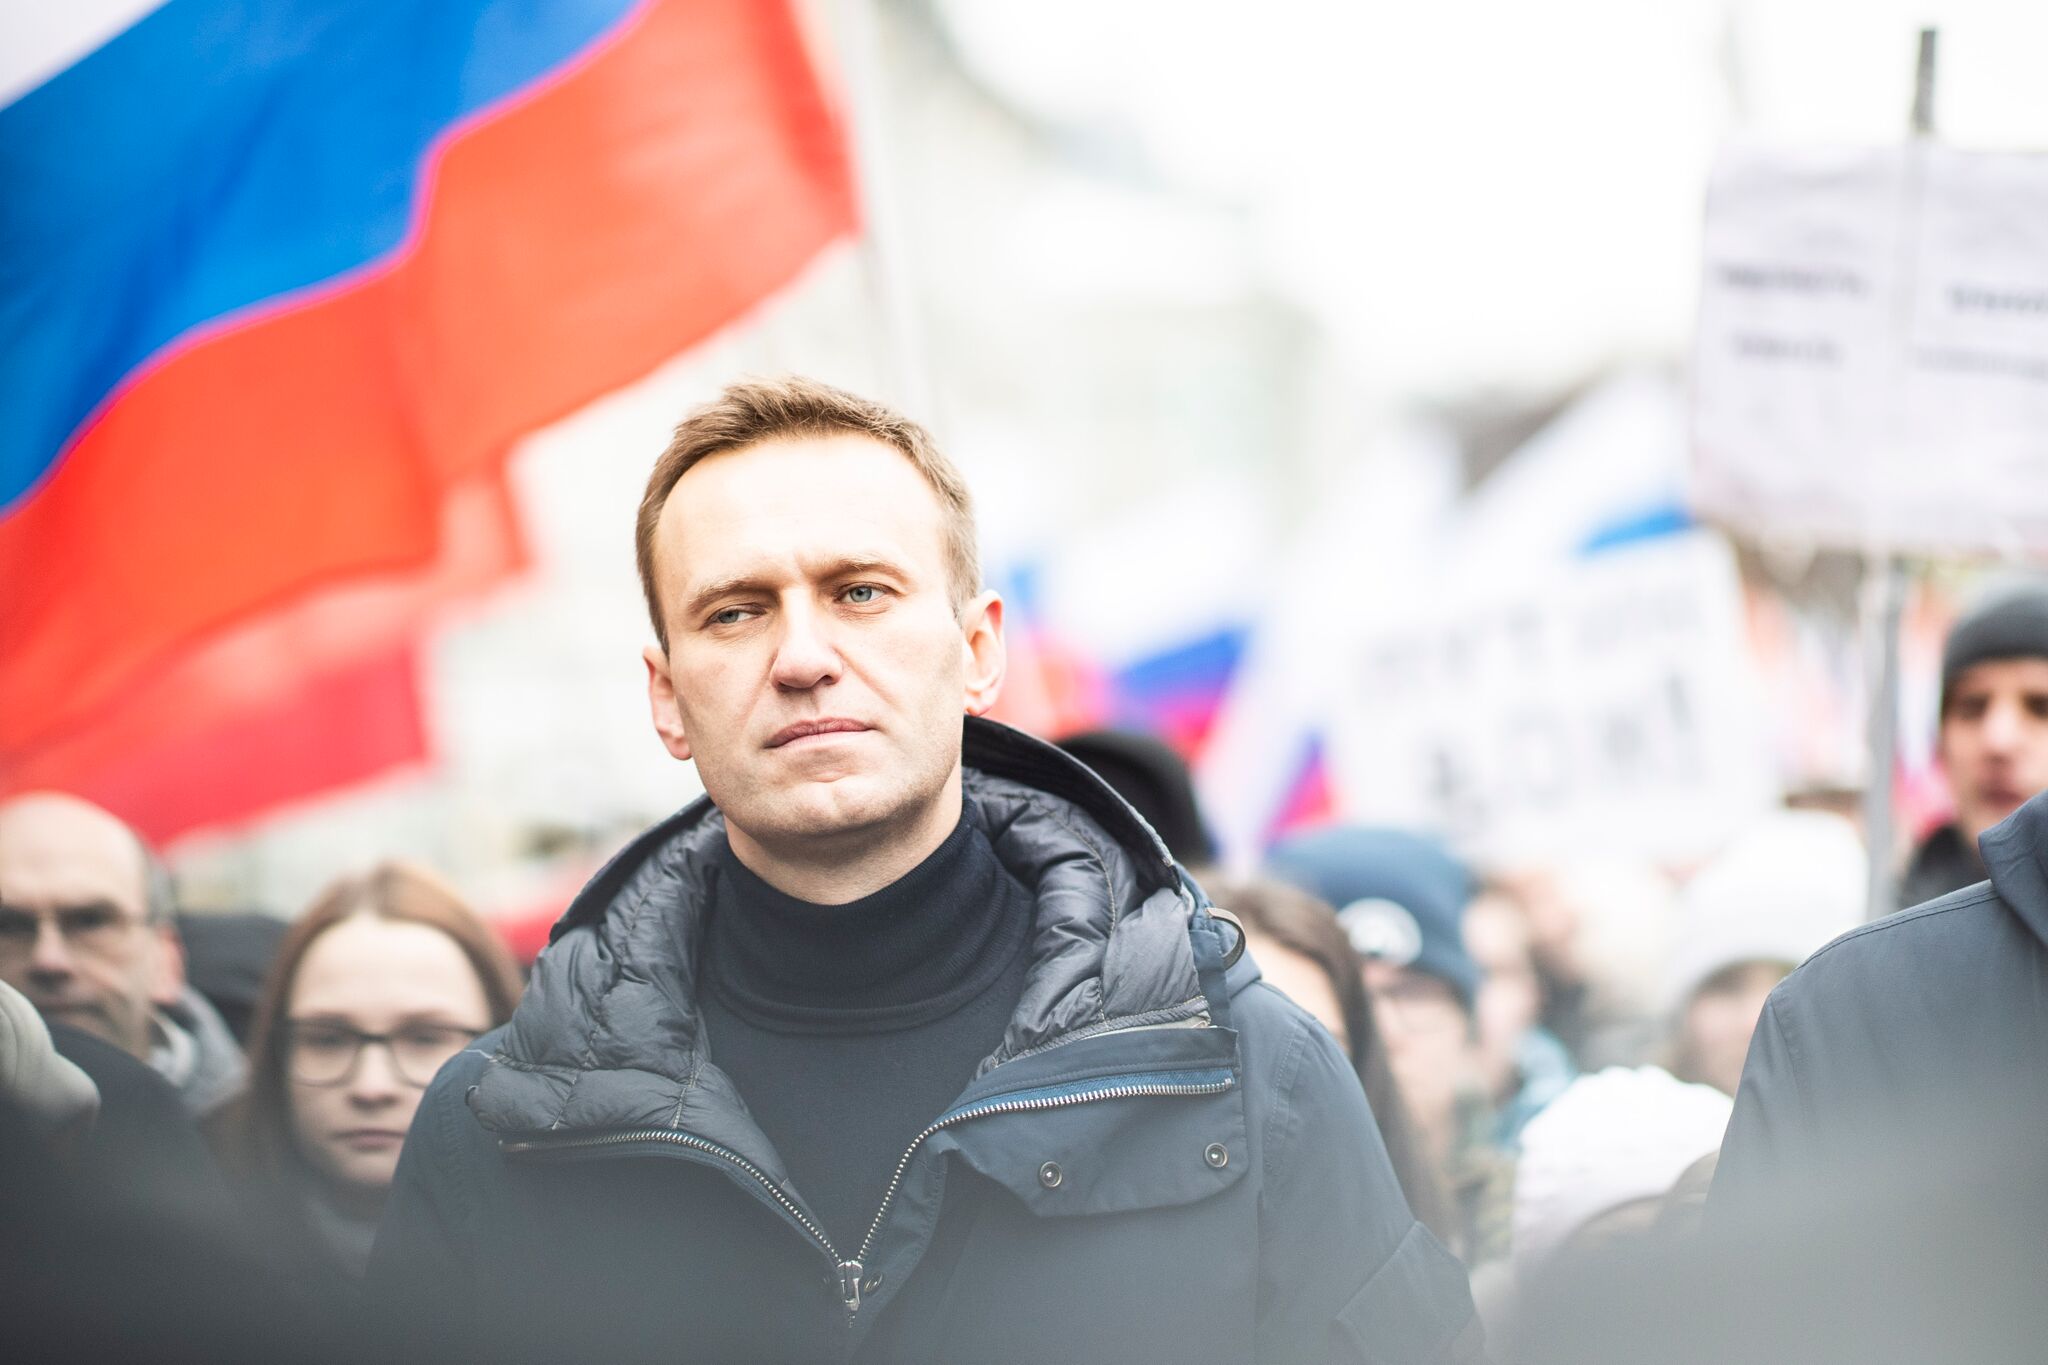 Марш памяти Бориса Немцова, Москва, 24 февраля 2019 г. Фото Евгения Фельдмана